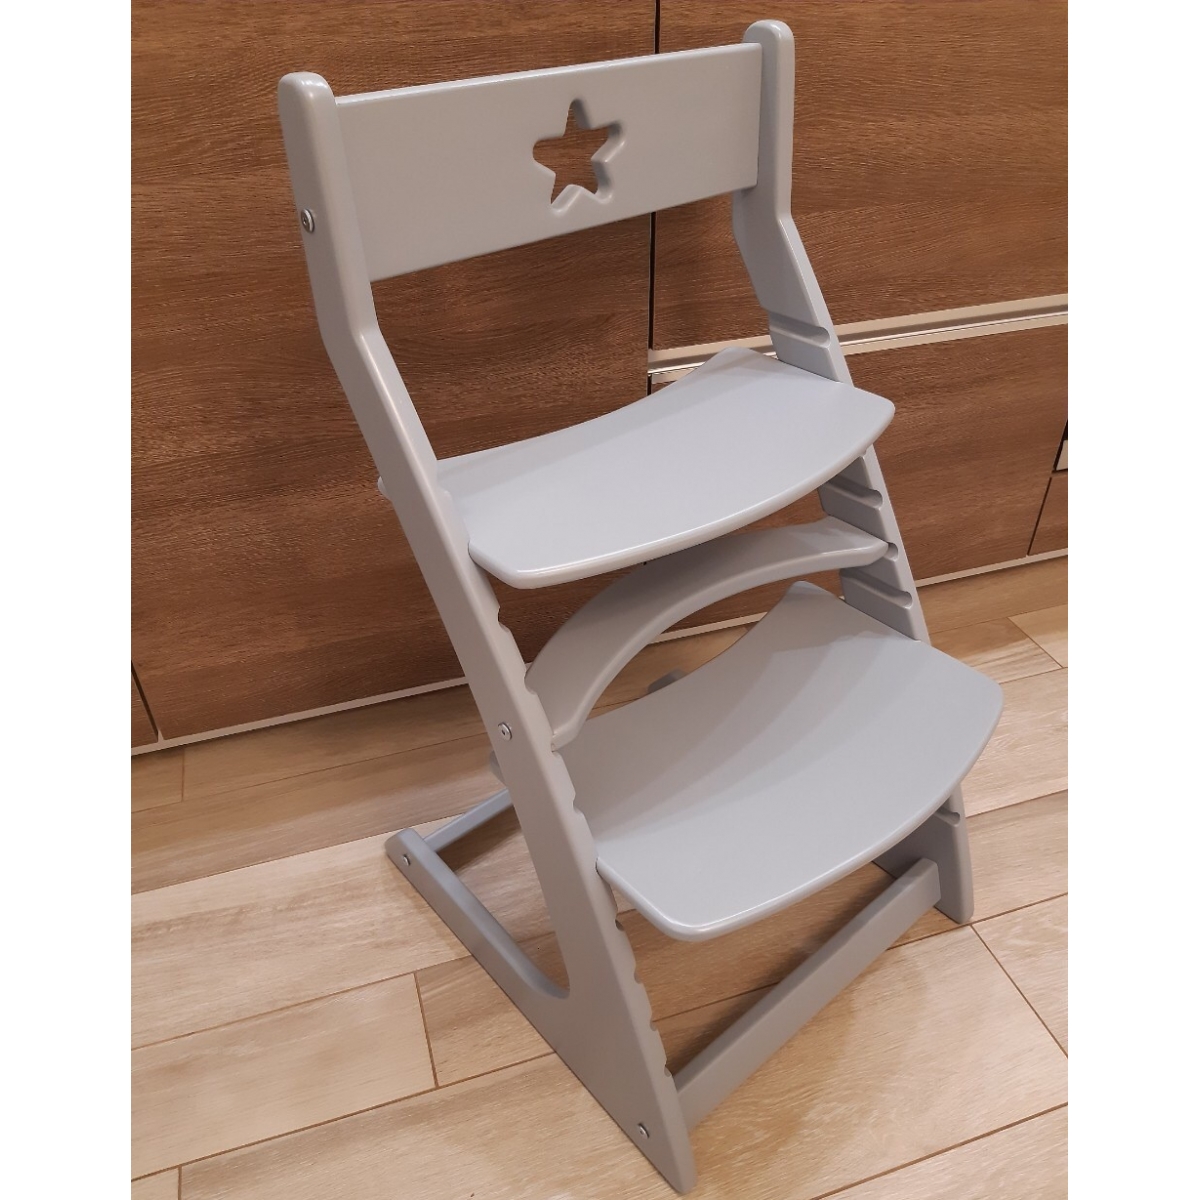 Детский растущий регулируемый стул Ростик/Rostik (серый)